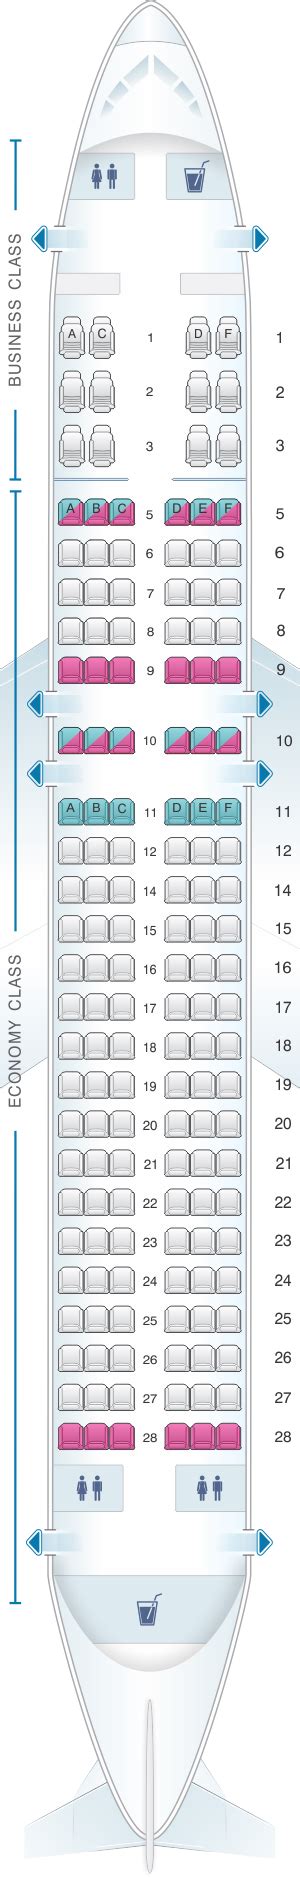 Seat Map Silkair Airbus A320 200